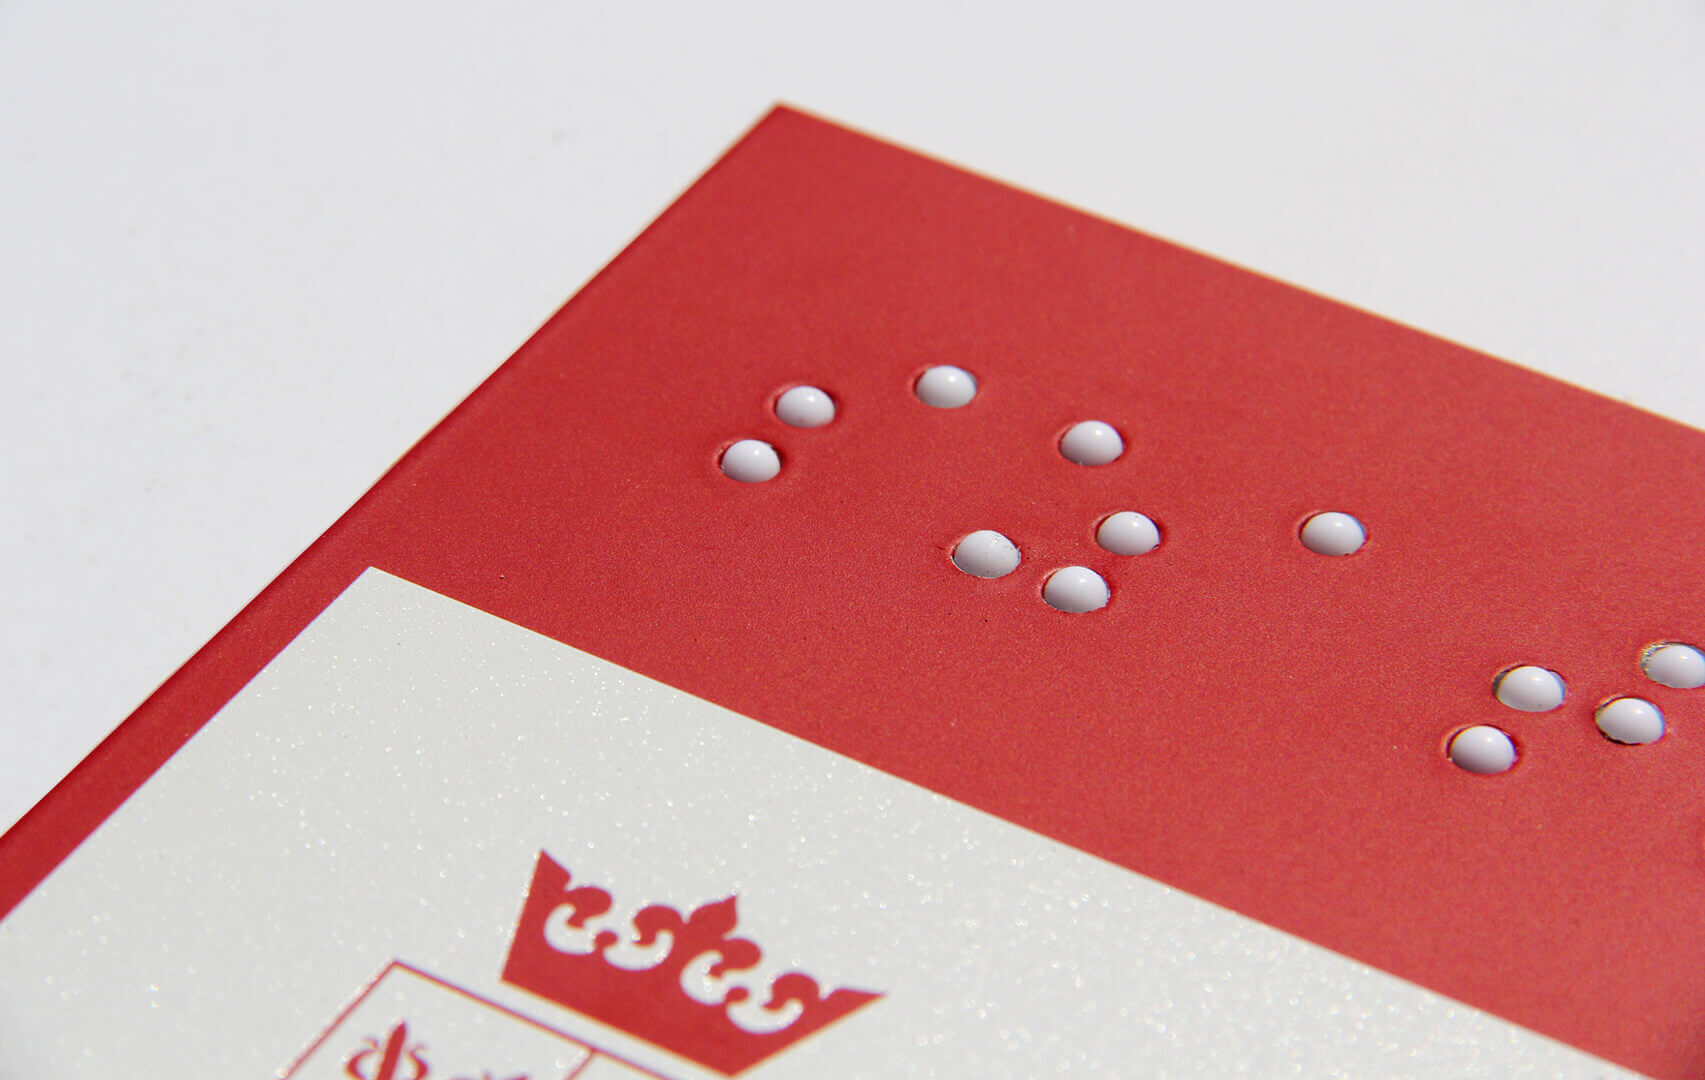 Placa informativa - Señal en braille para ciegos en blanco y rojo.